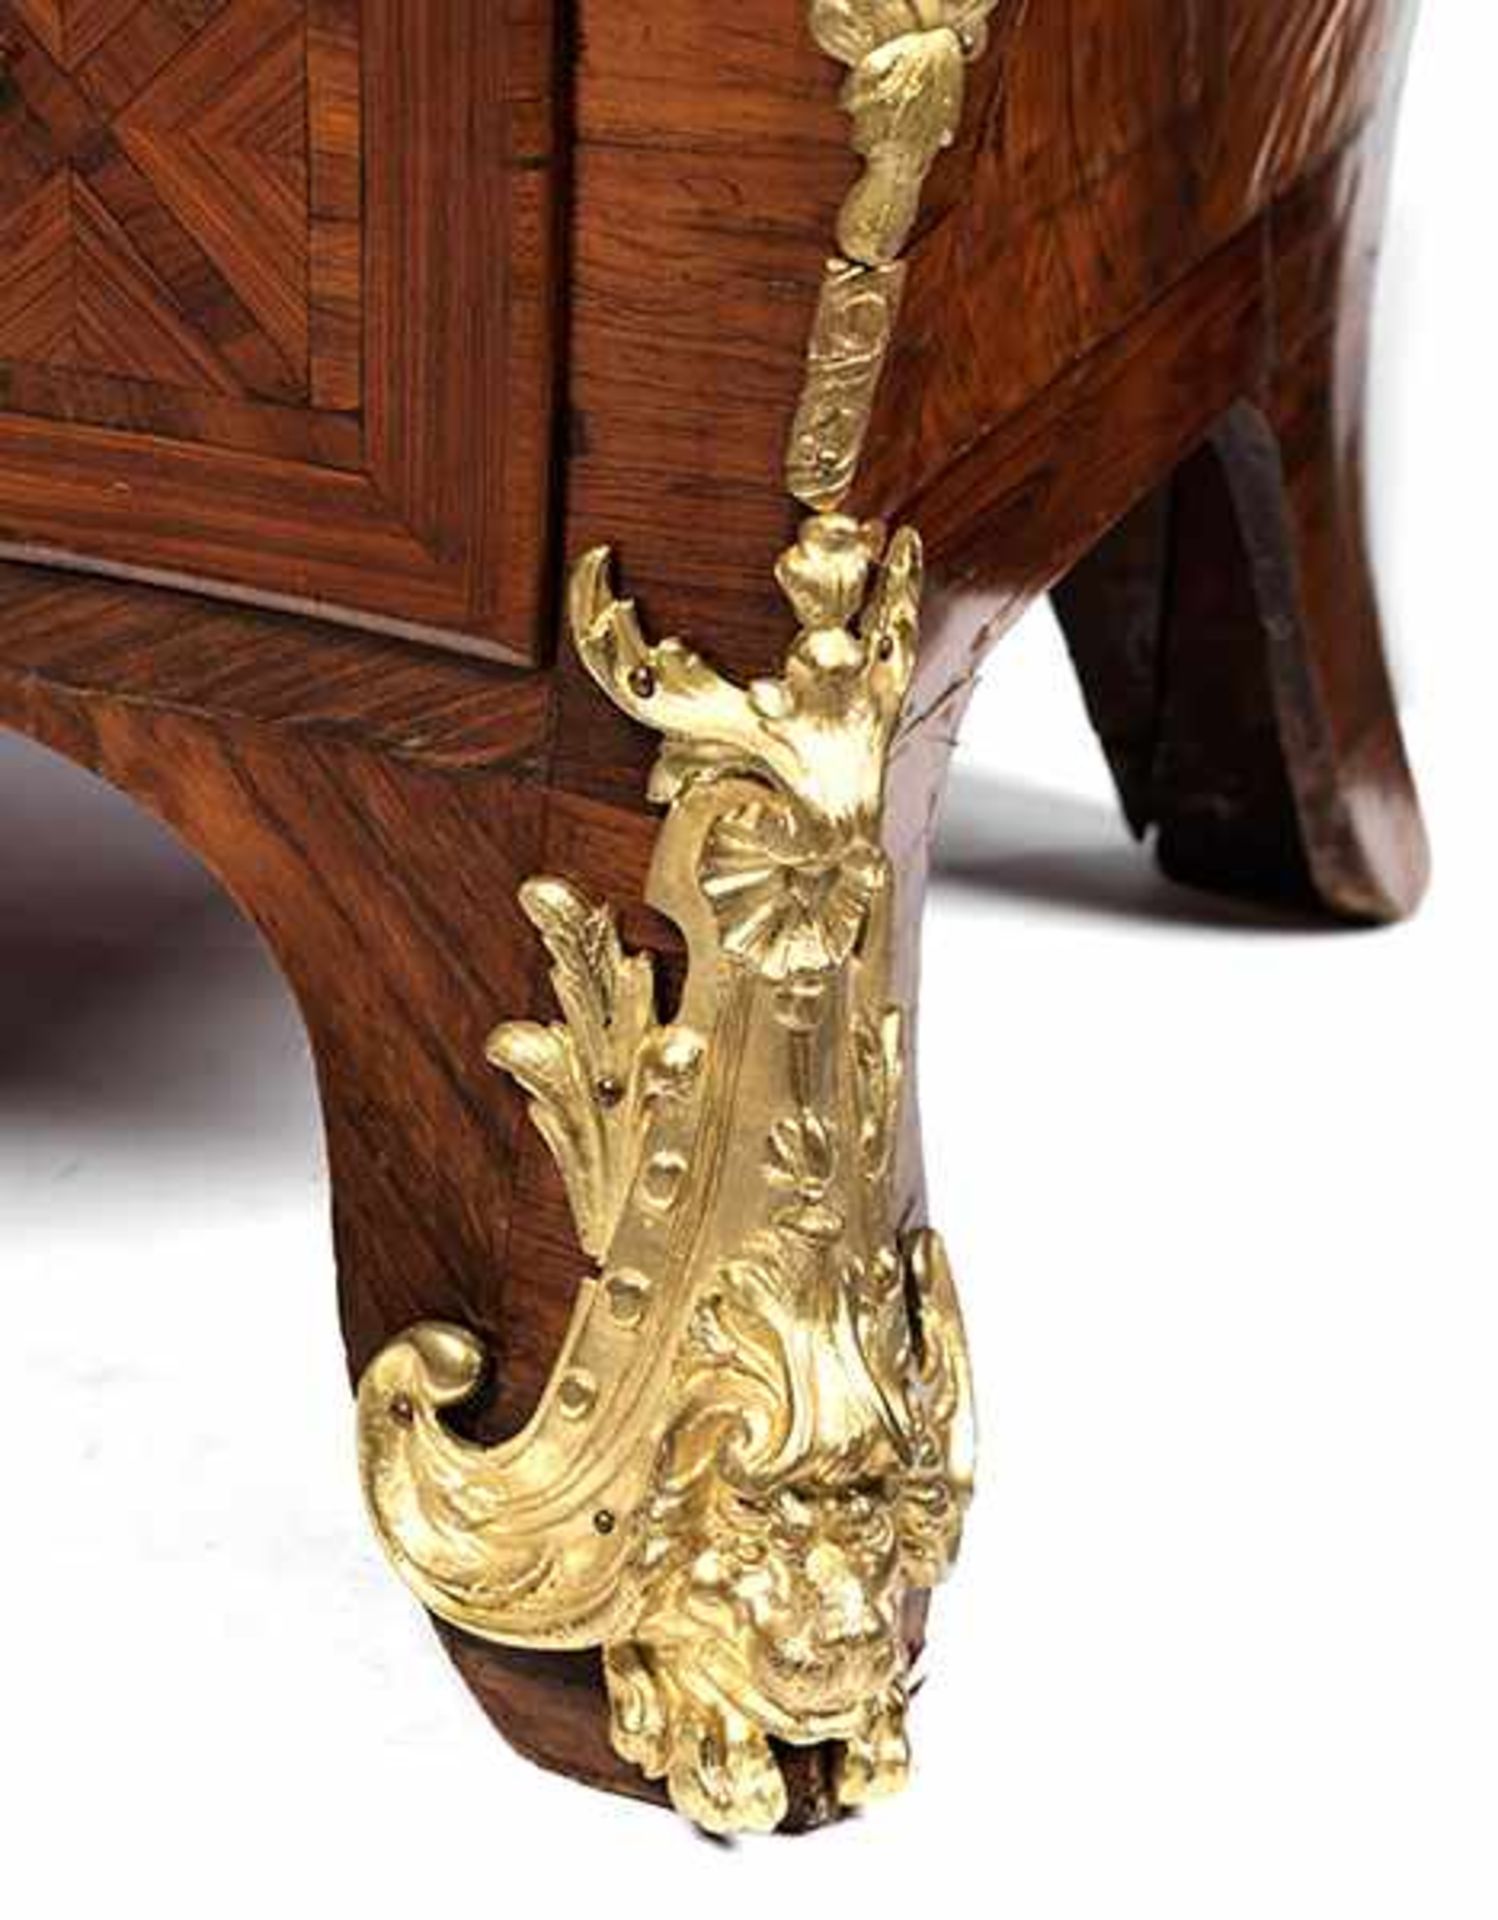 Dreischübige Louis XV-Kommode mit Marmorplatte Höhe: 85 cm. Breite: 131 cm. Tiefe: 70 cm. - Bild 4 aus 5